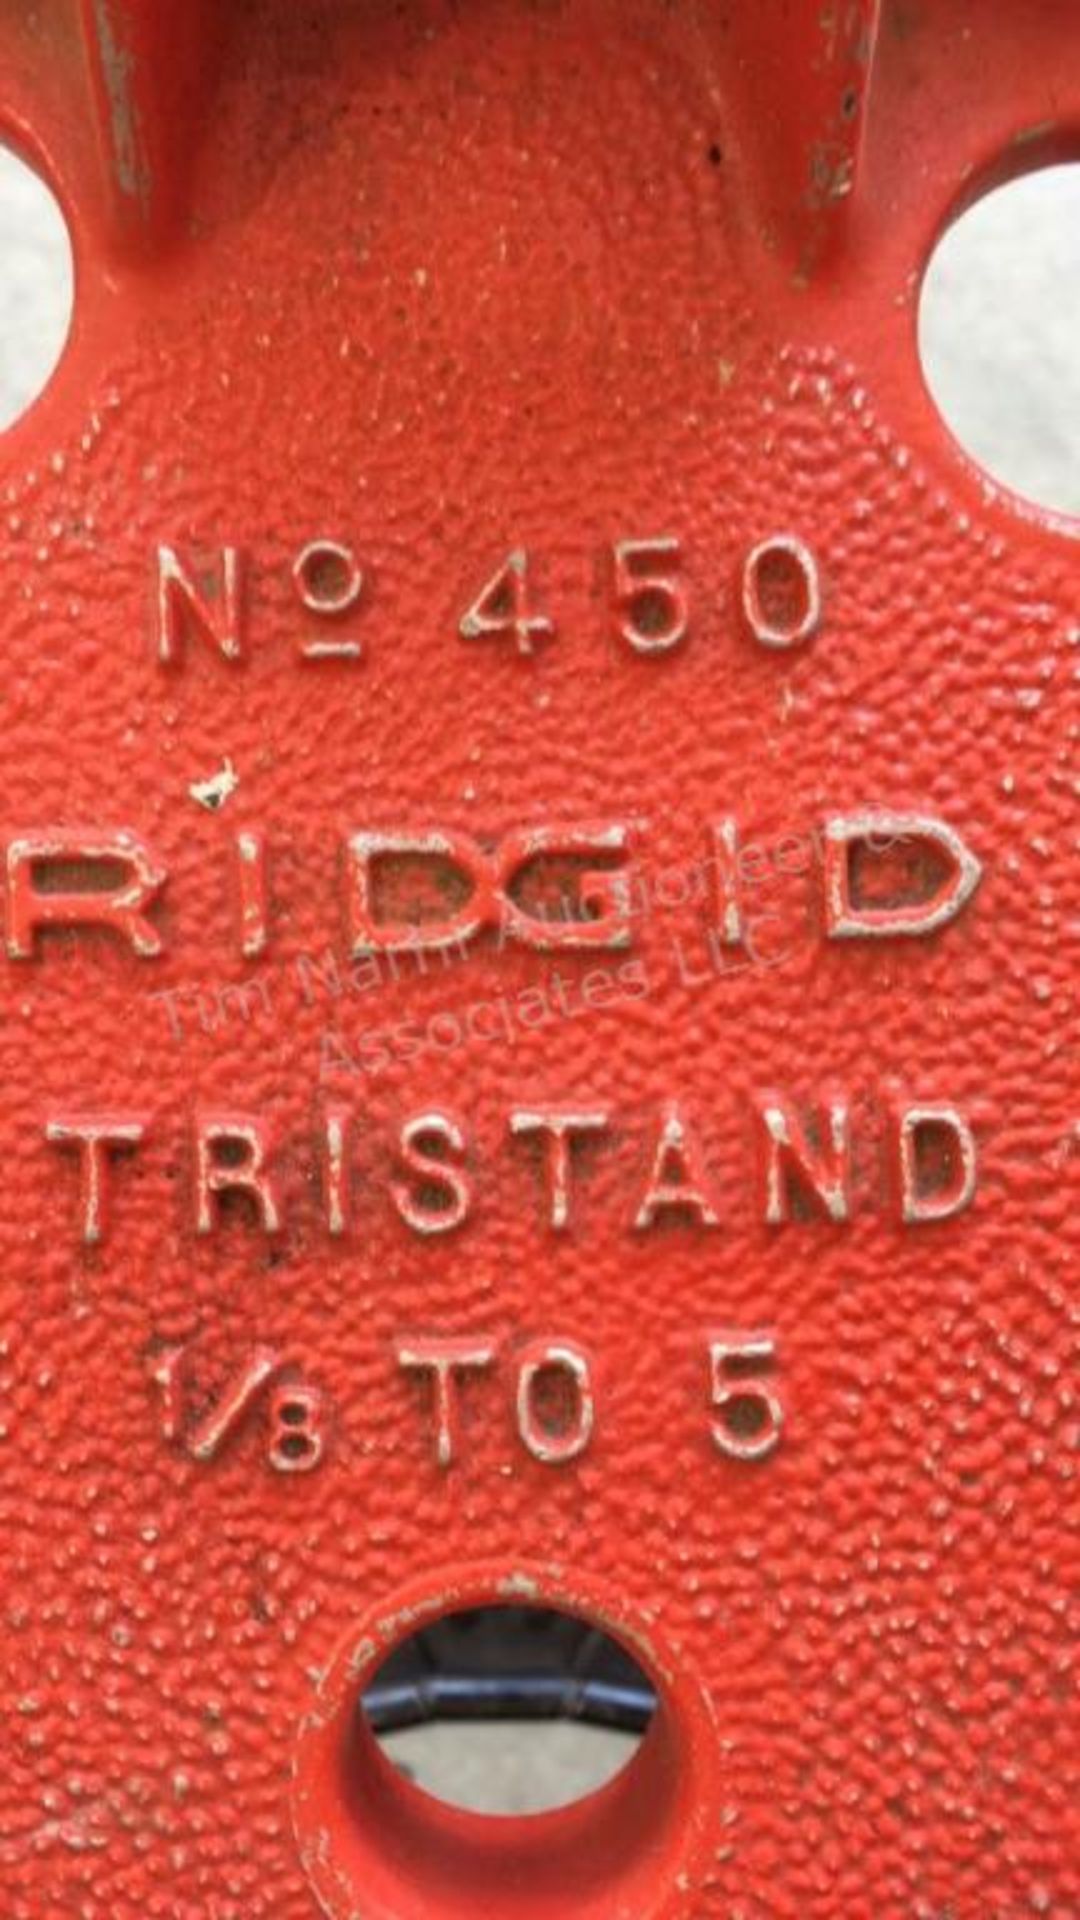 A: Rigid No• 450 tristand 1/8 - 5 - Image 3 of 3